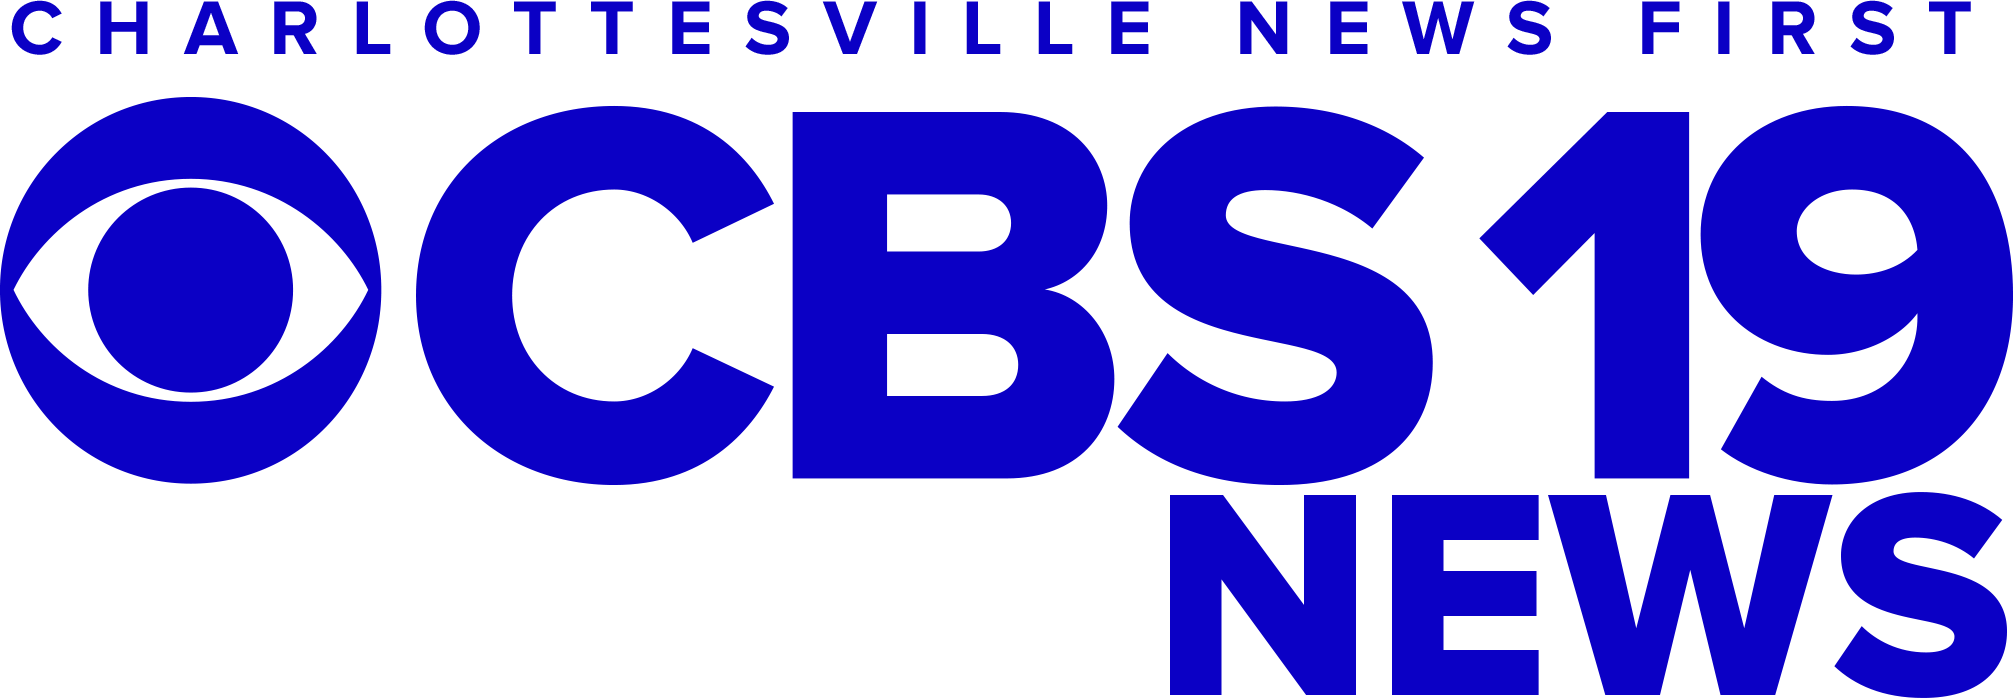 CBS19 News Charlottesville News First – blue